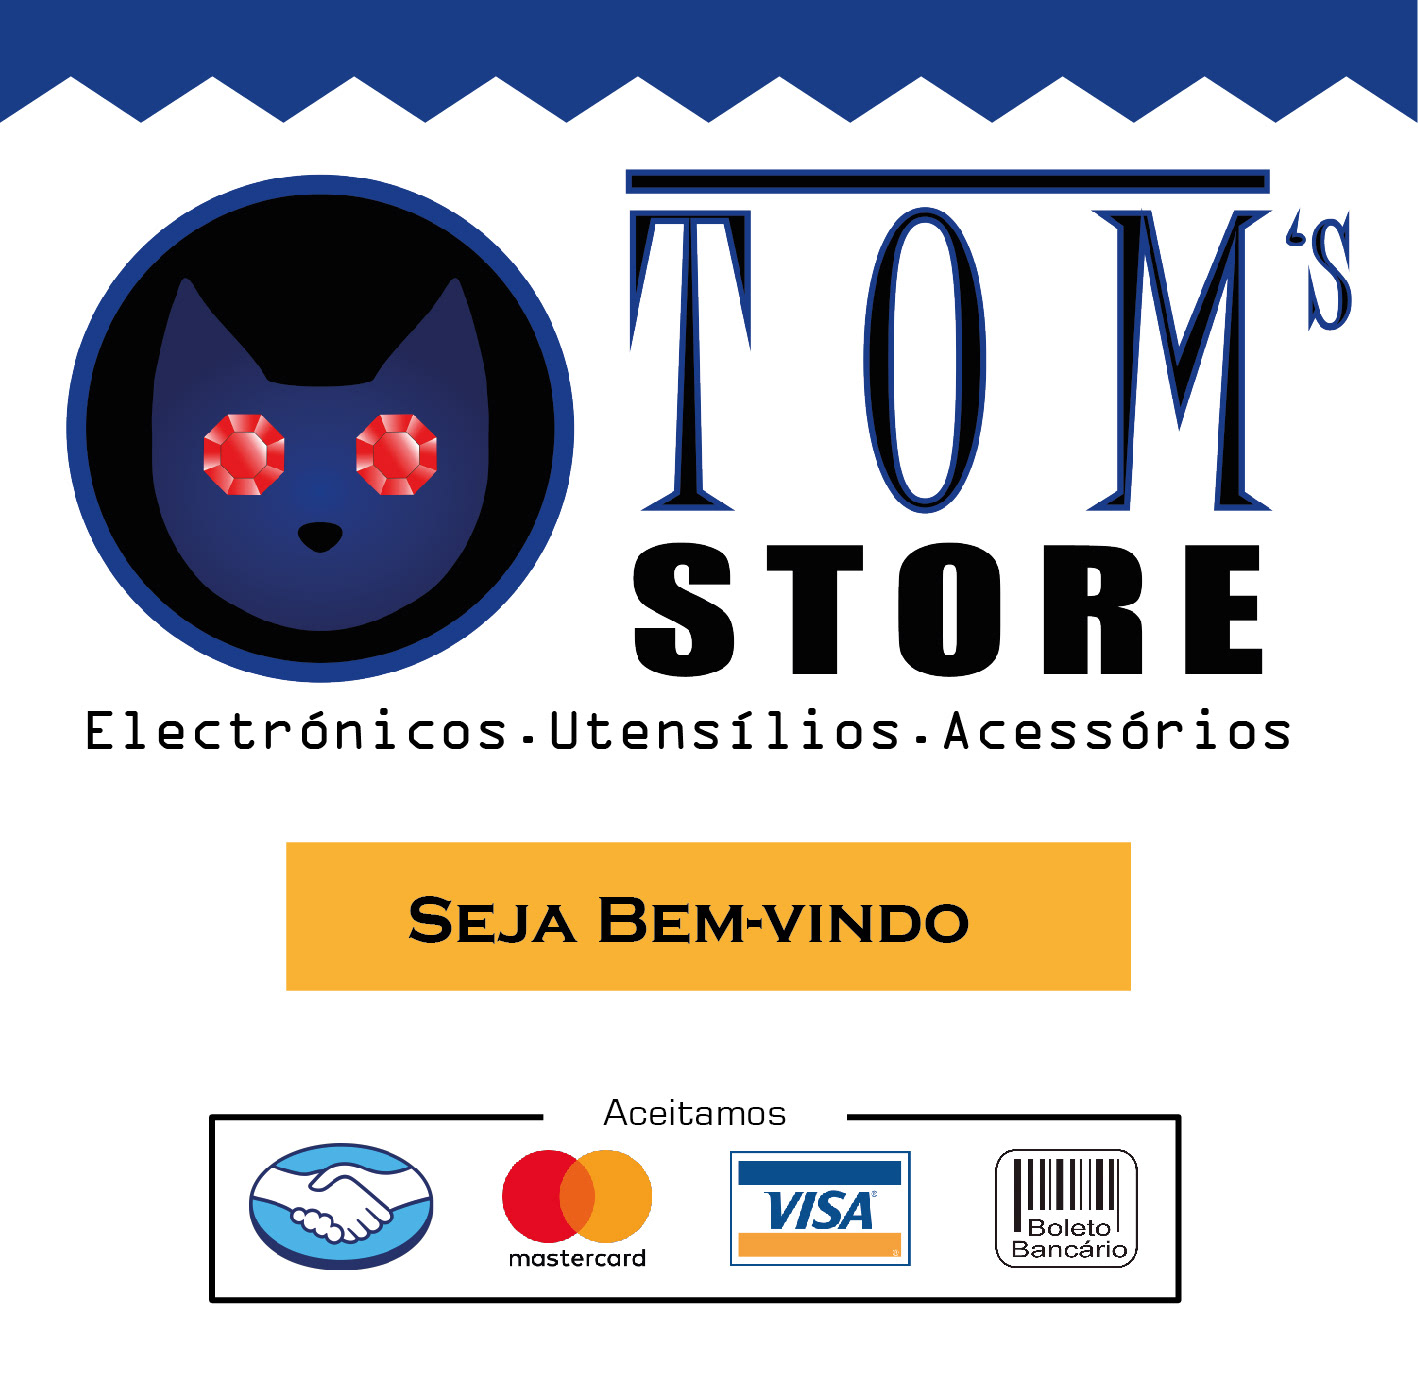 Tom's Store2